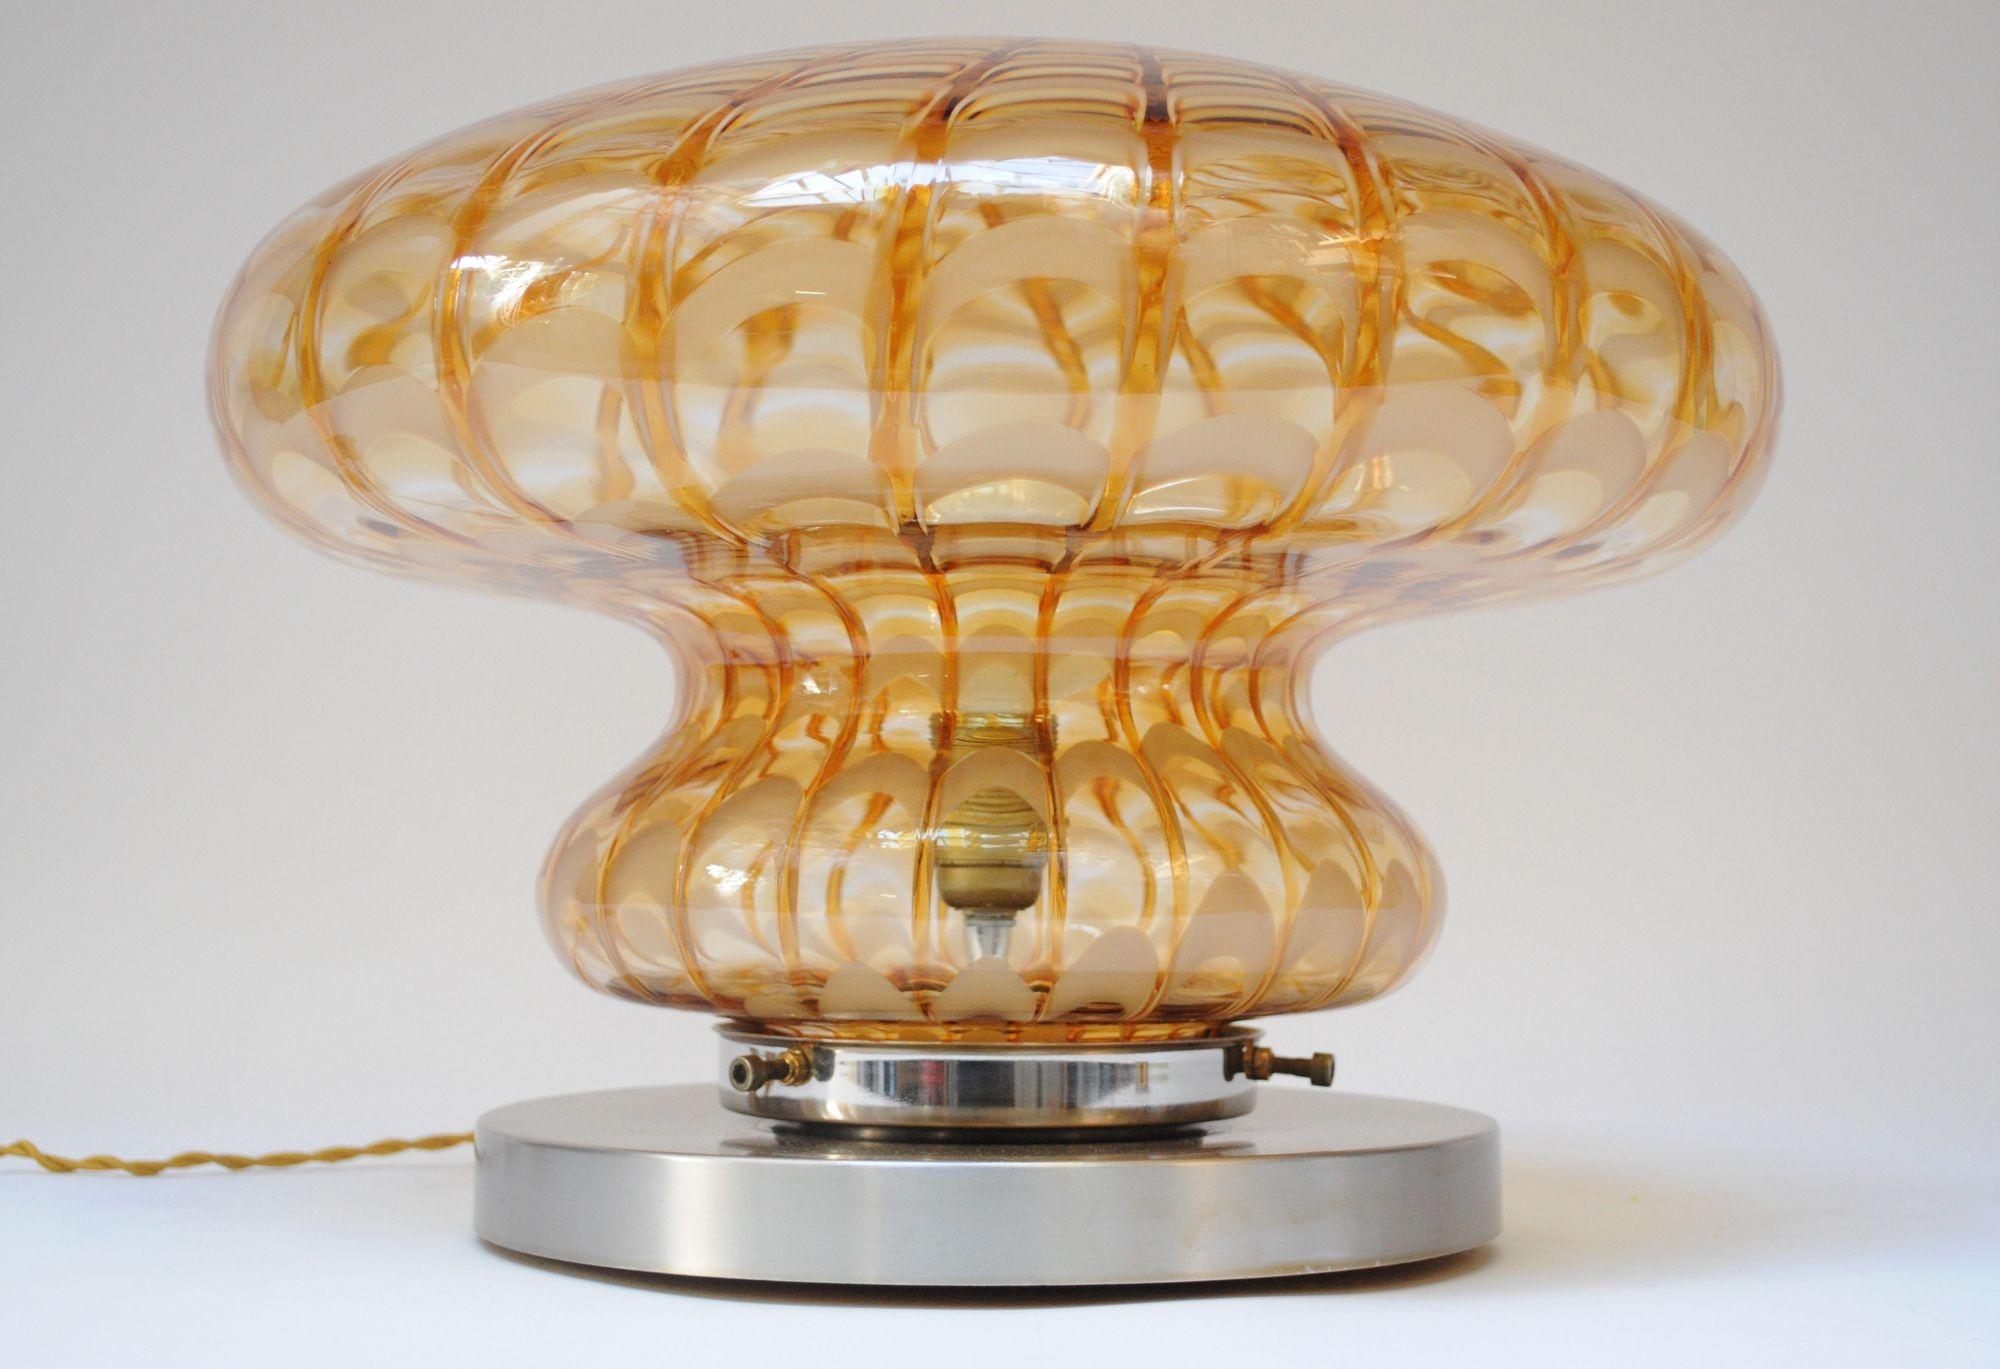 Tischlampe aus Murano-Glas in Form eines Pilzes, getragen von einem runden Aluminiumsockel (ca. 1970er Jahre, Italien).
Attraktives Muster in Bernstein- und Honigtönen.
Ausgezeichneter Vintage-Zustand mit leichten Abnutzungserscheinungen an der